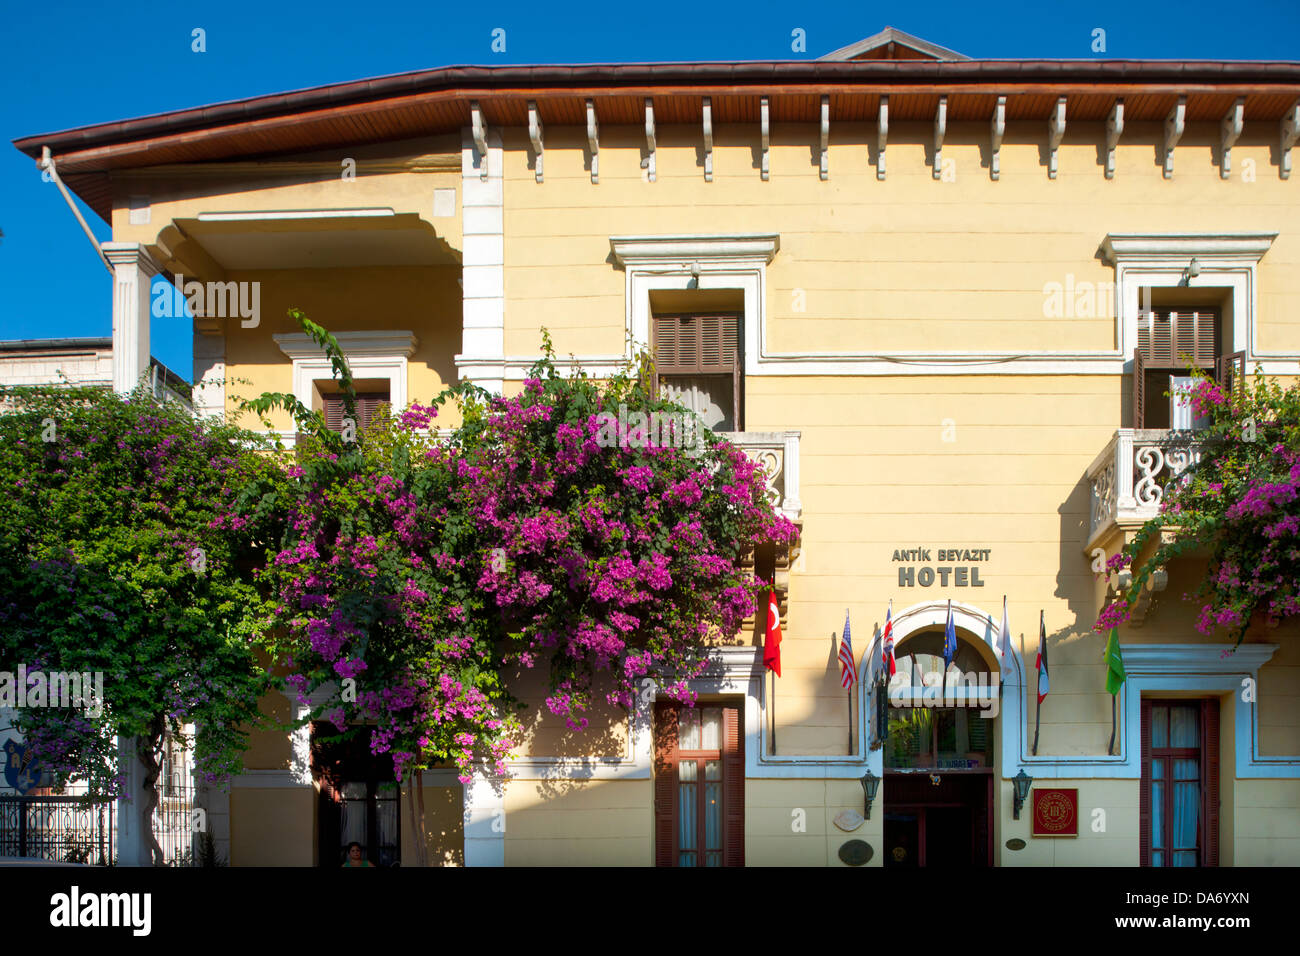 Türkei, Provinz Hatay, Antakya, Hükümet Caddesi, Antik Beyazit Hotel Stockfoto